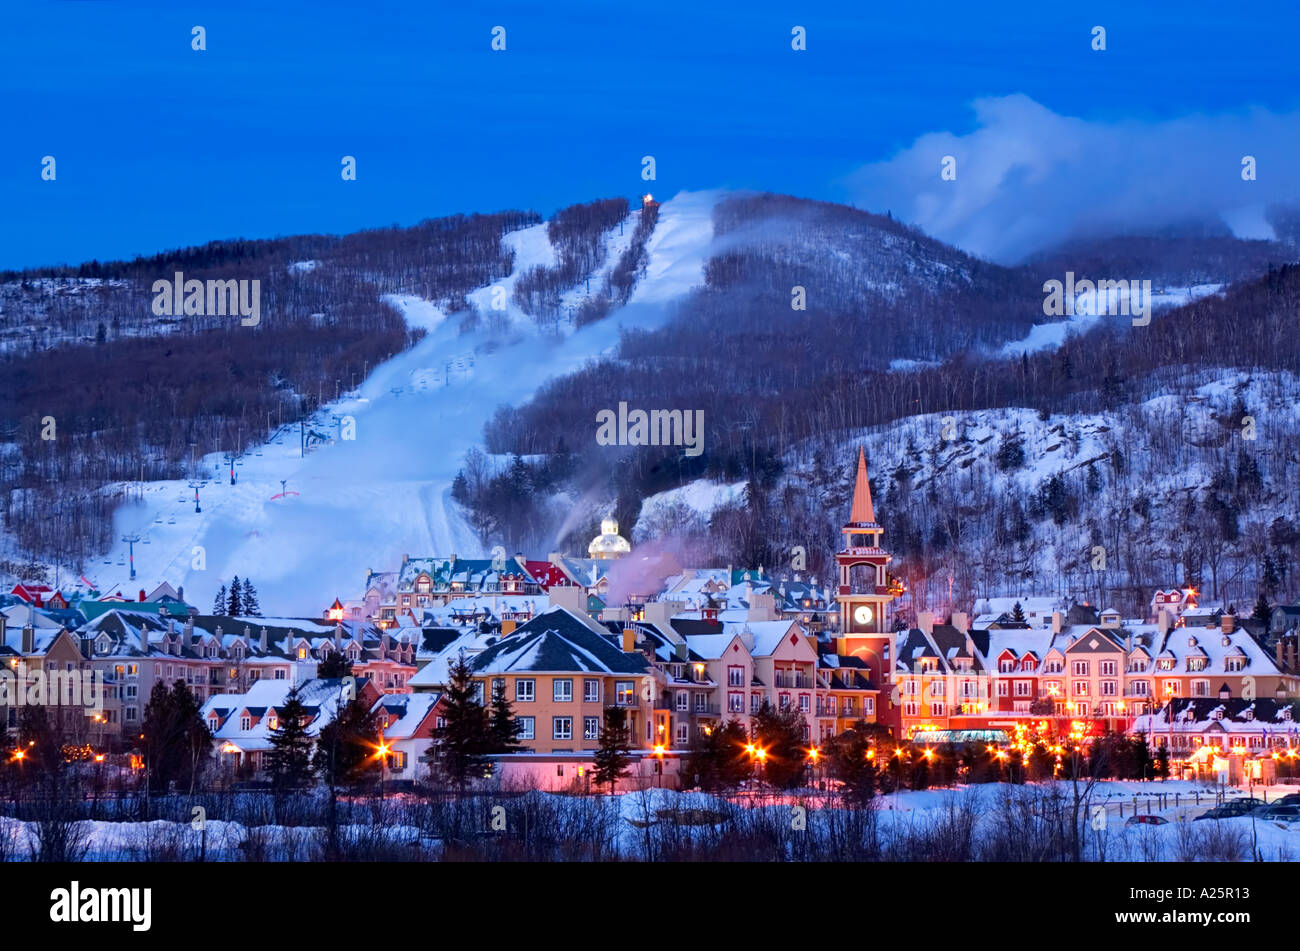 Mont Tremblant Quebec Canada Stock Photo Alamy